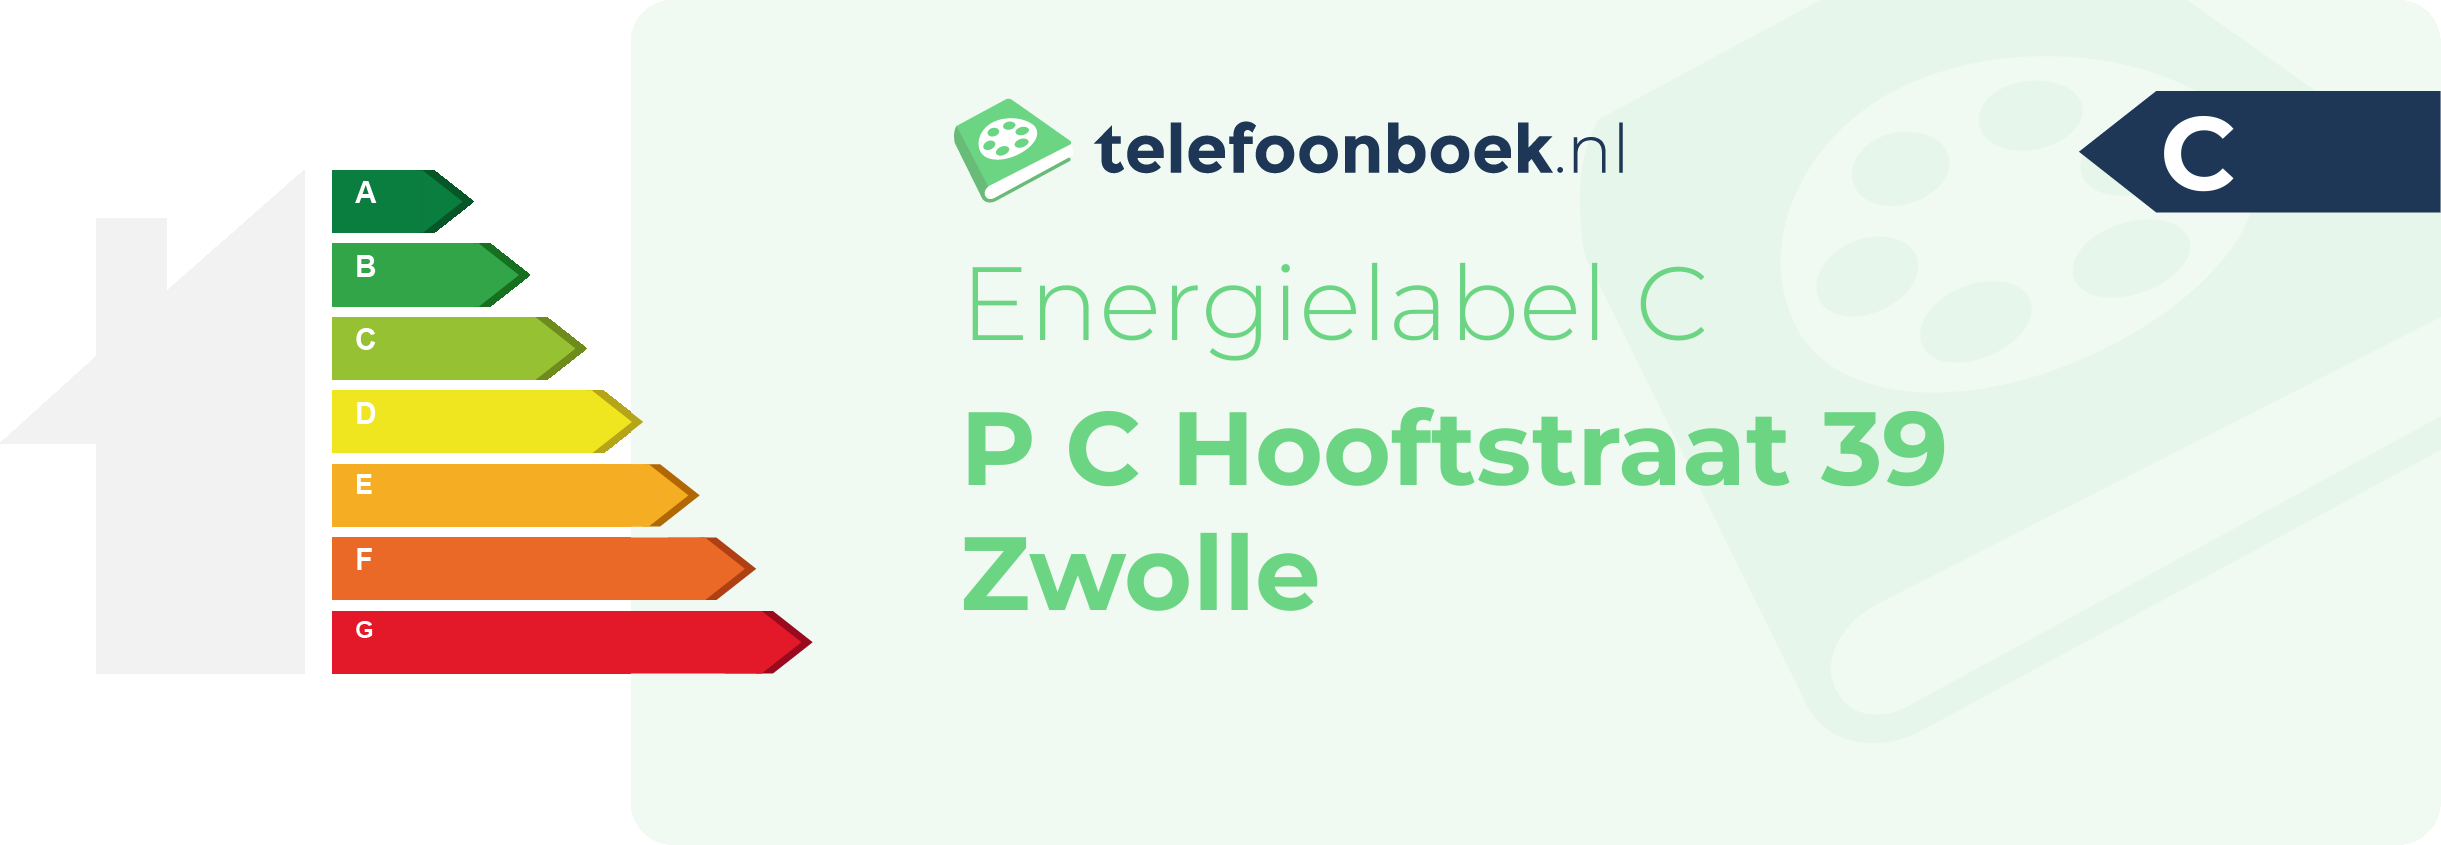 Energielabel P C Hooftstraat 39 Zwolle